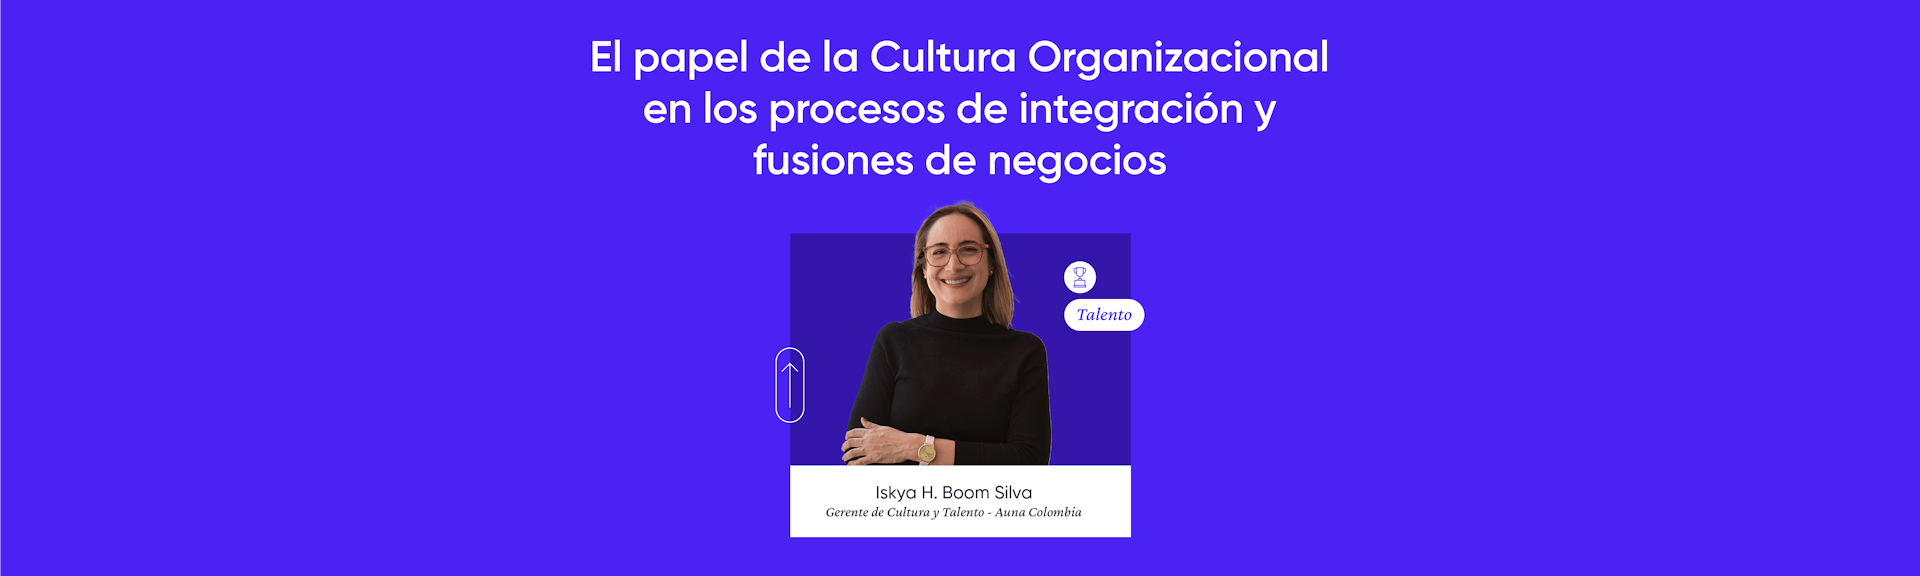 El papel de la Cultura Organizacional en los procesos de integración y fusiones de negocios